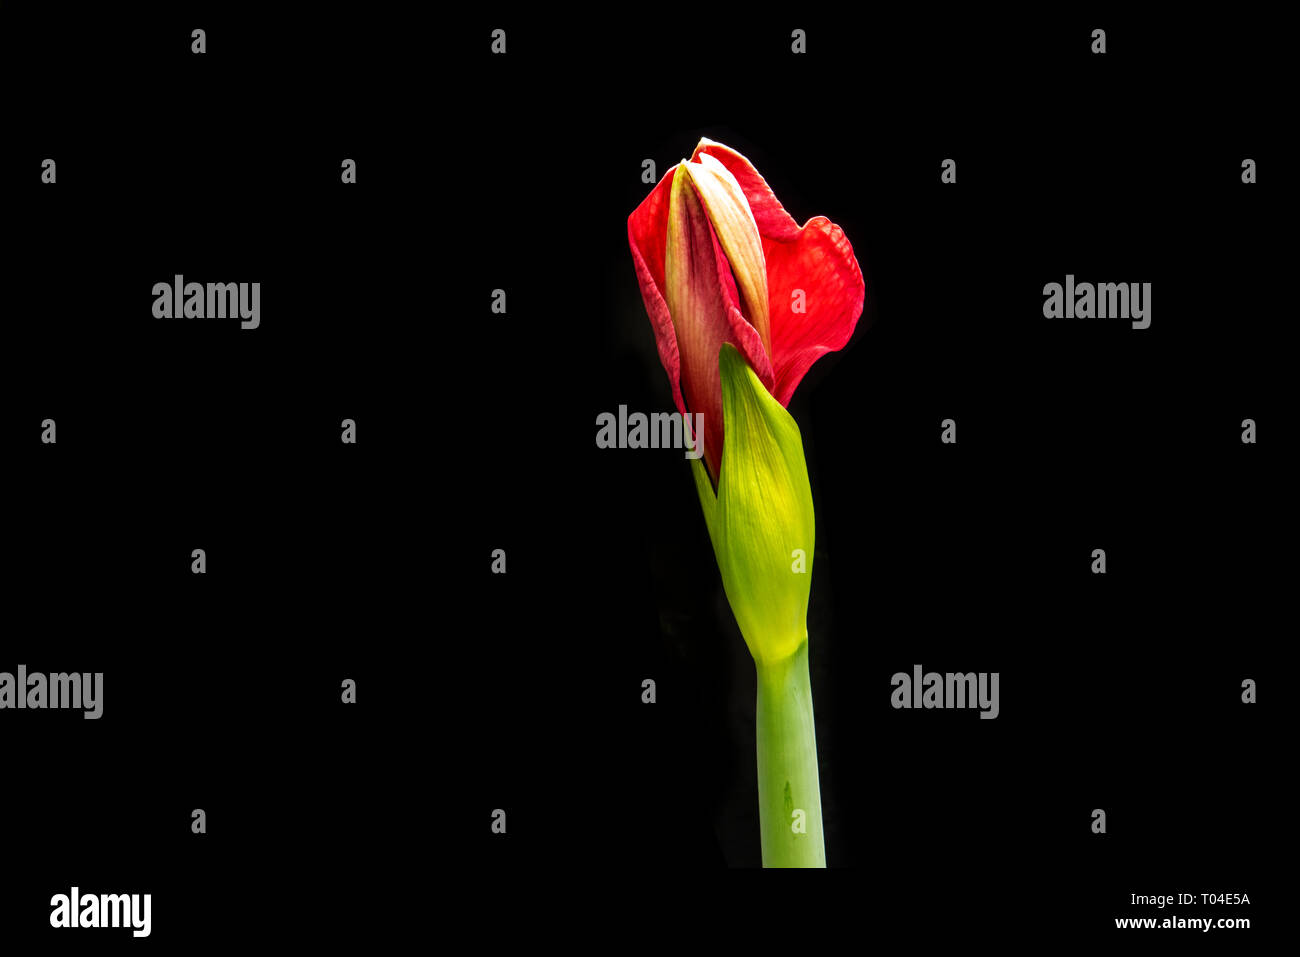 Amaryllis bulb  flowering against black background Stock Photo